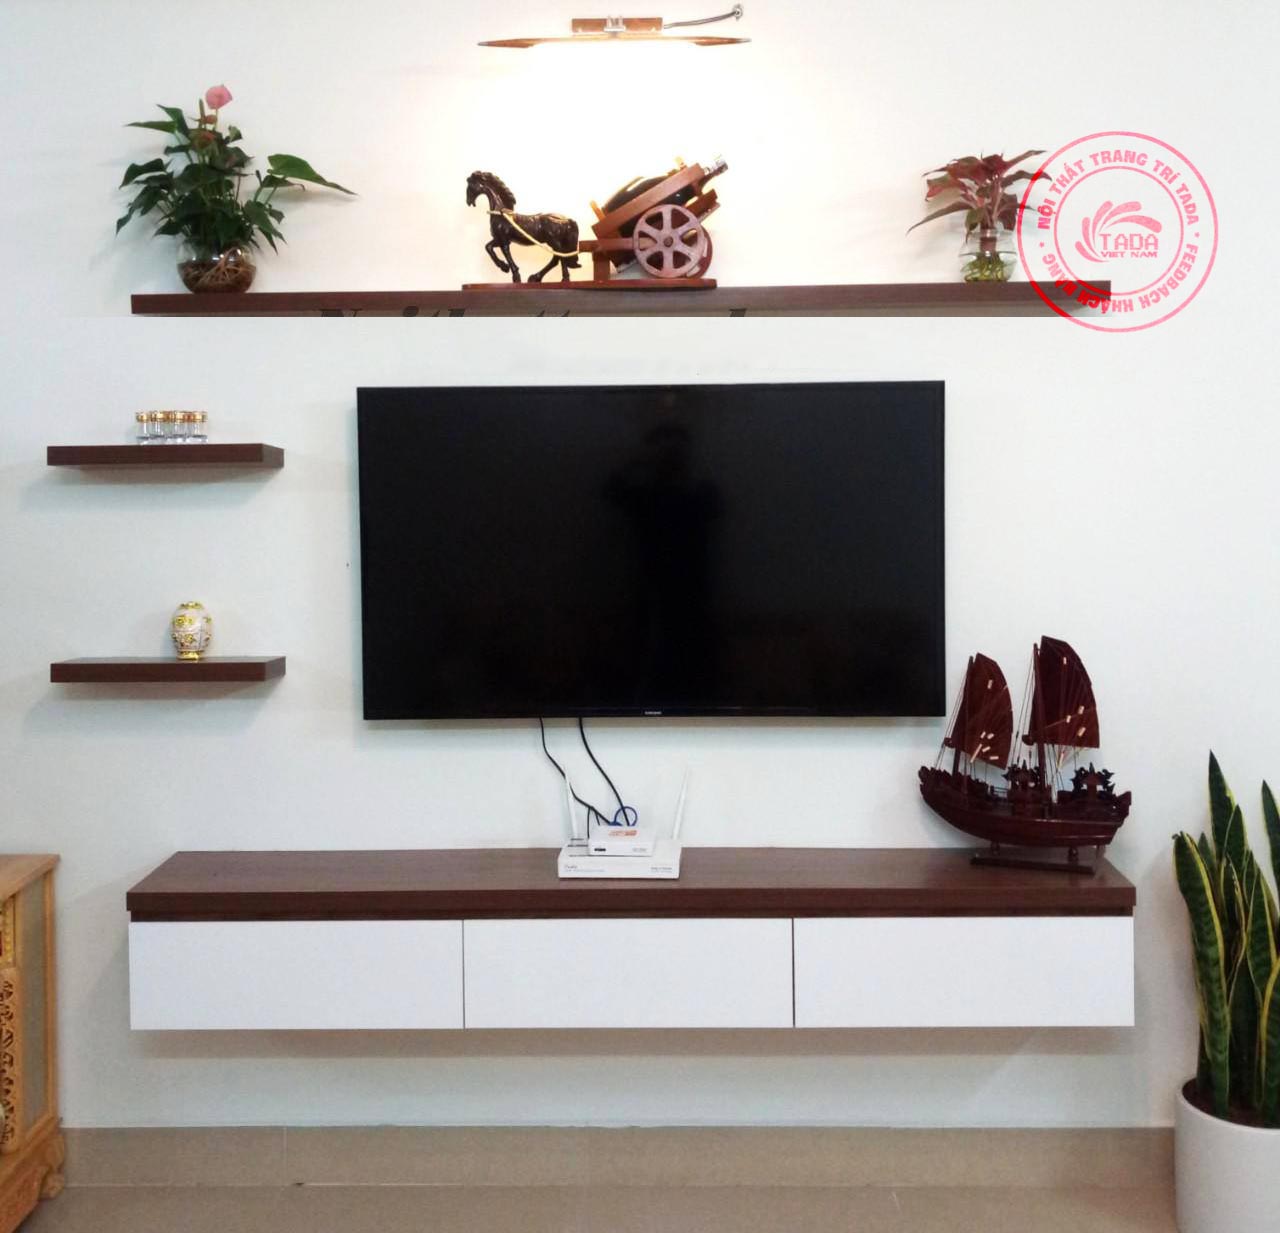 Kệ TiVi treo tường 3 cánh lật đang trở thành xu hướng quen thuộc trong thiết kế nội thất. Thiết kế thông minh và tiện dụng giúp bạn tối đa hóa không gian phòng khách của mình mà vẫn đảm bảo tiêu chuẩn về hình thức và chất lượng.